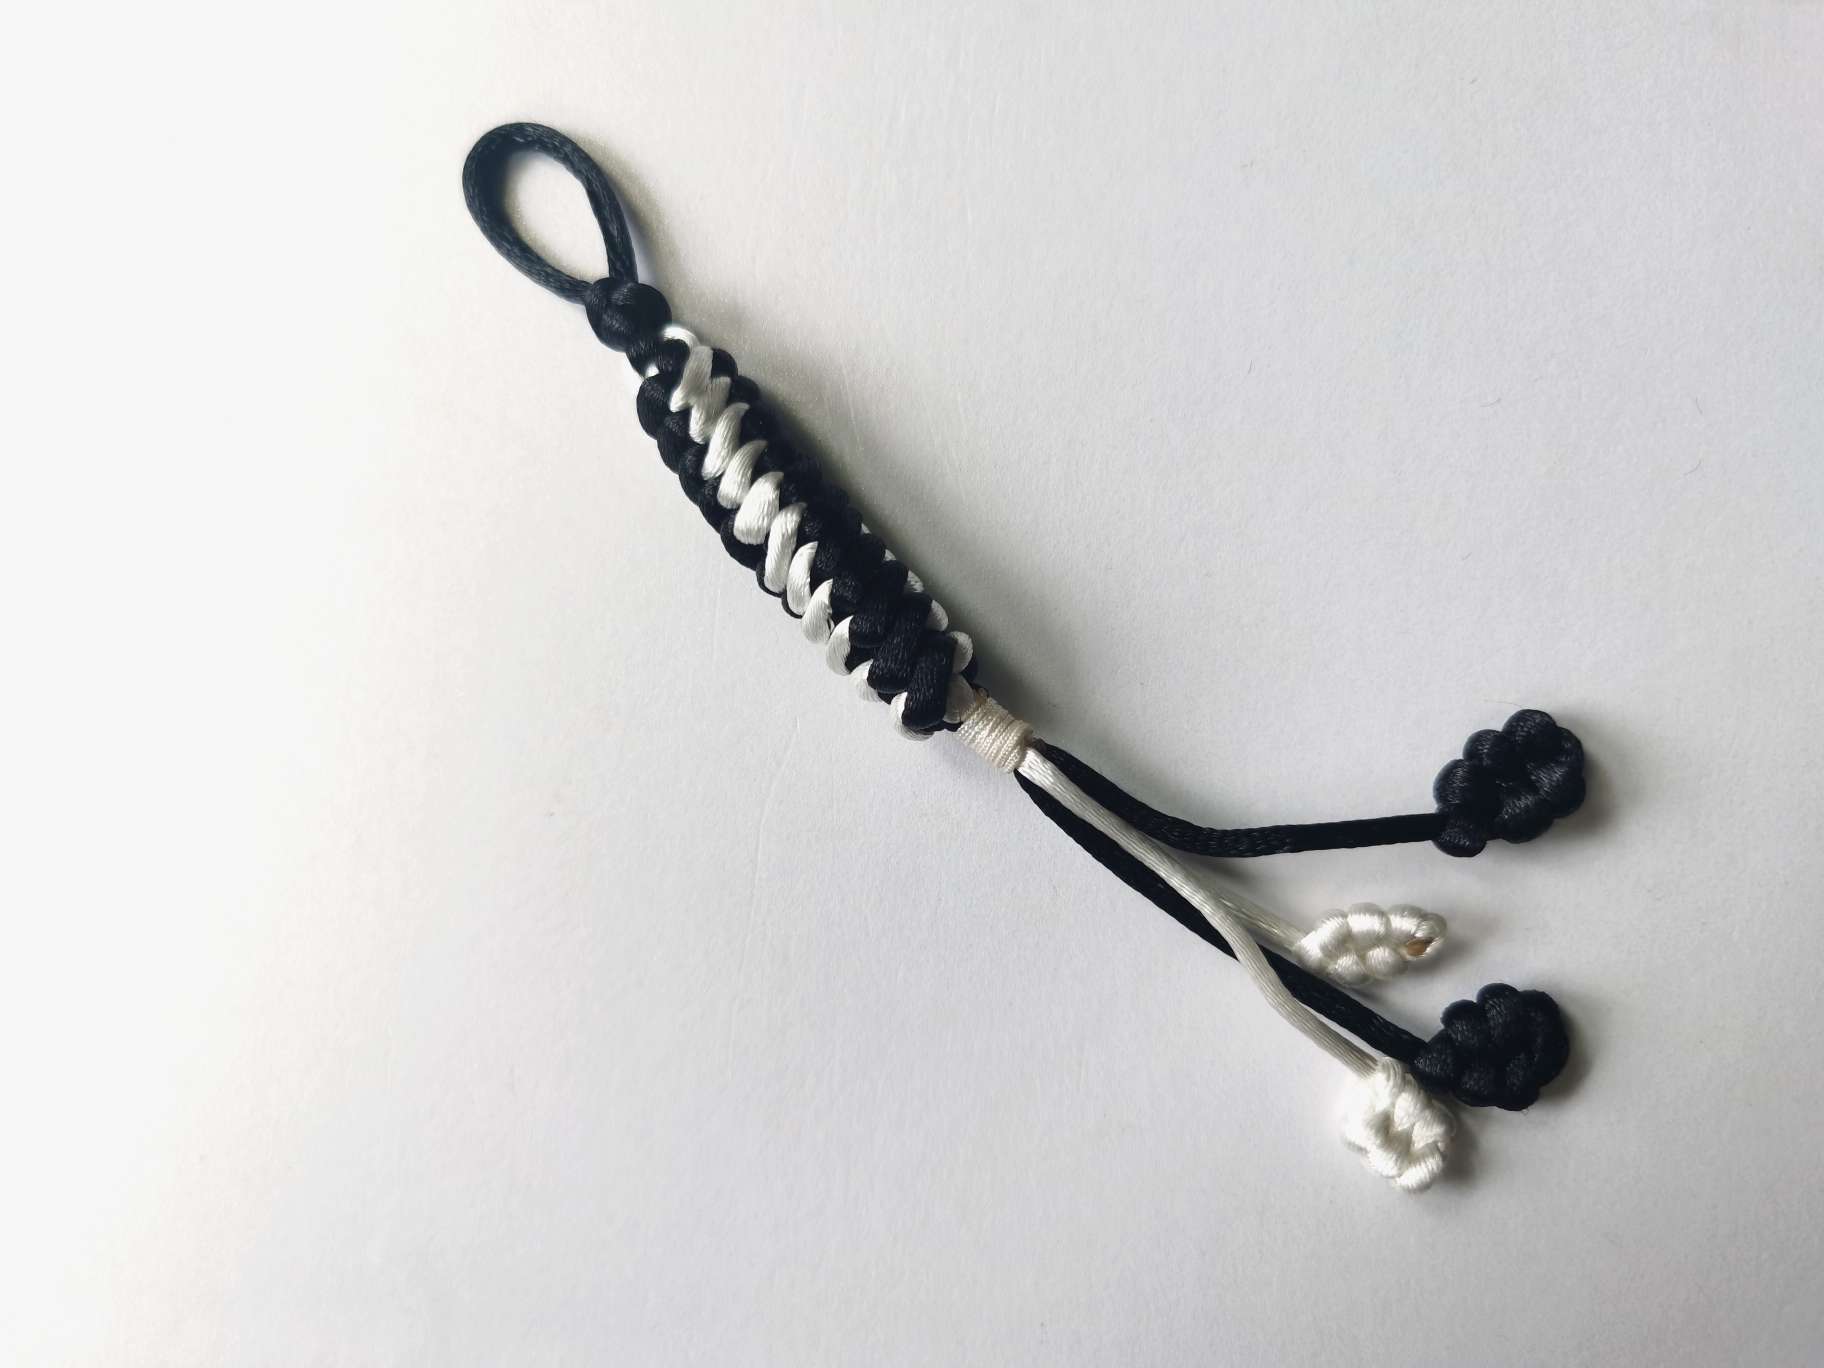 此钥匙扣挂件由玉米结编织而成。
“玉米结”外形形式玉米，有节节高升的寓意。